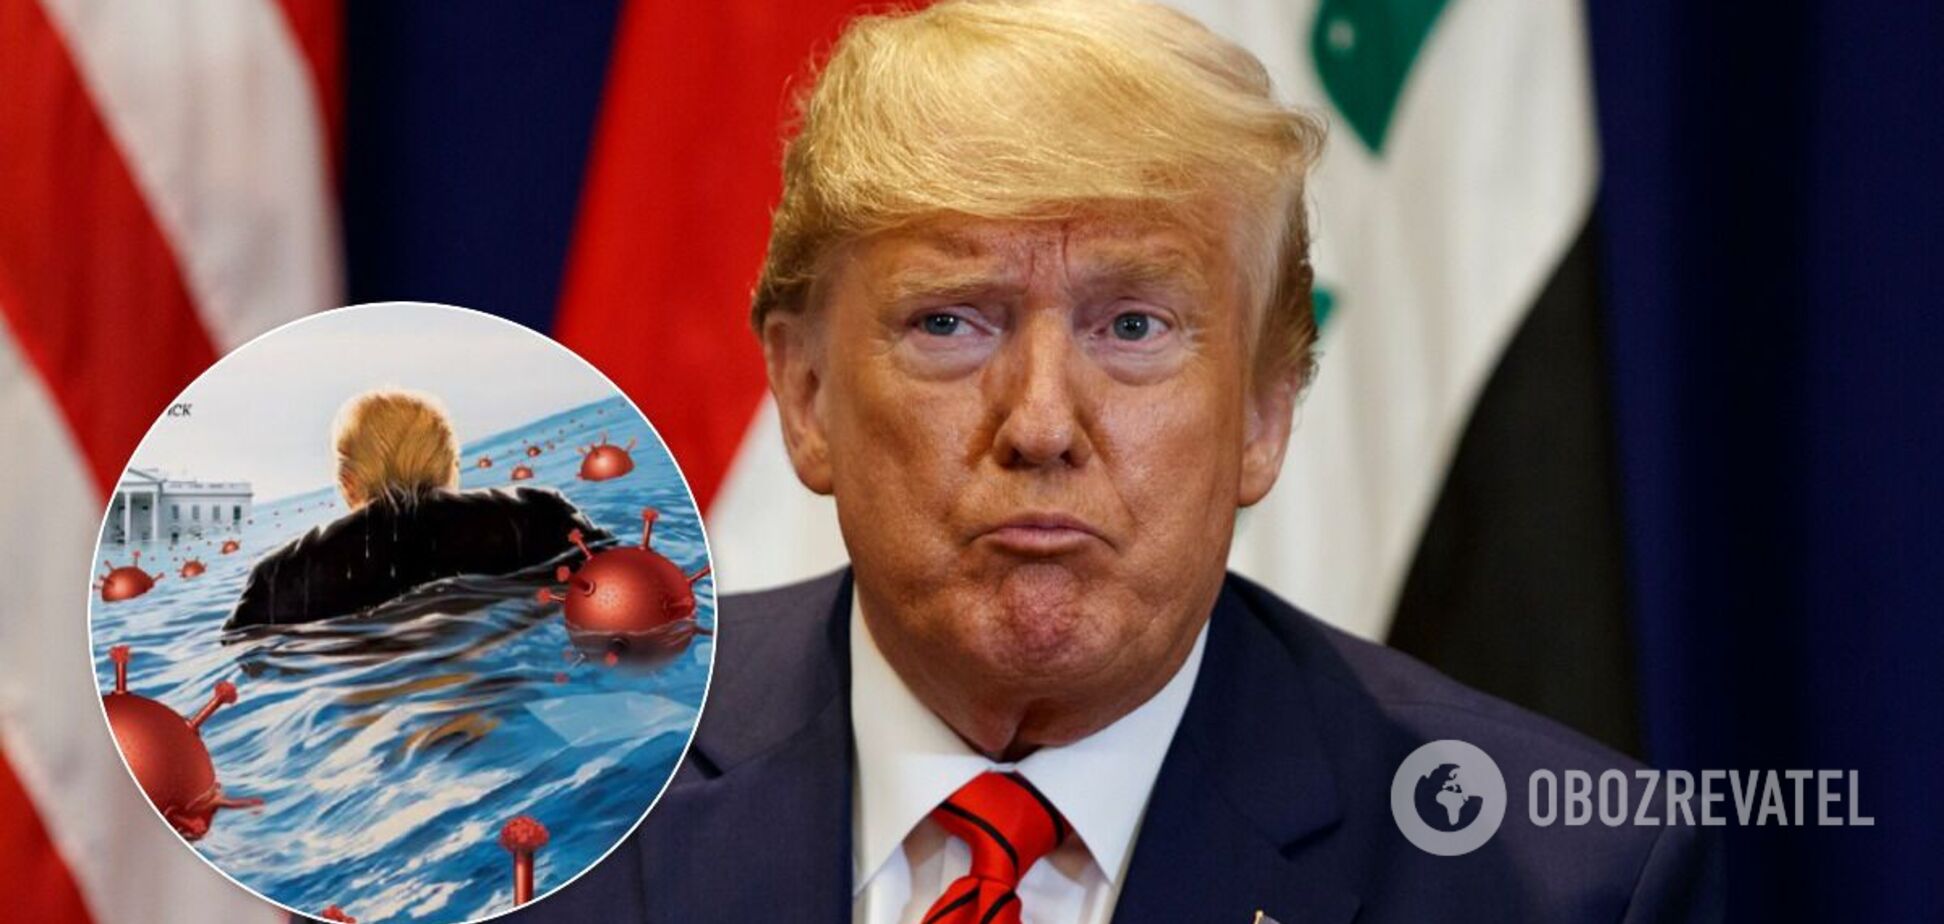 Трамп на обложке Time попал во взрывное 'море коронавируса'. Фото и видео